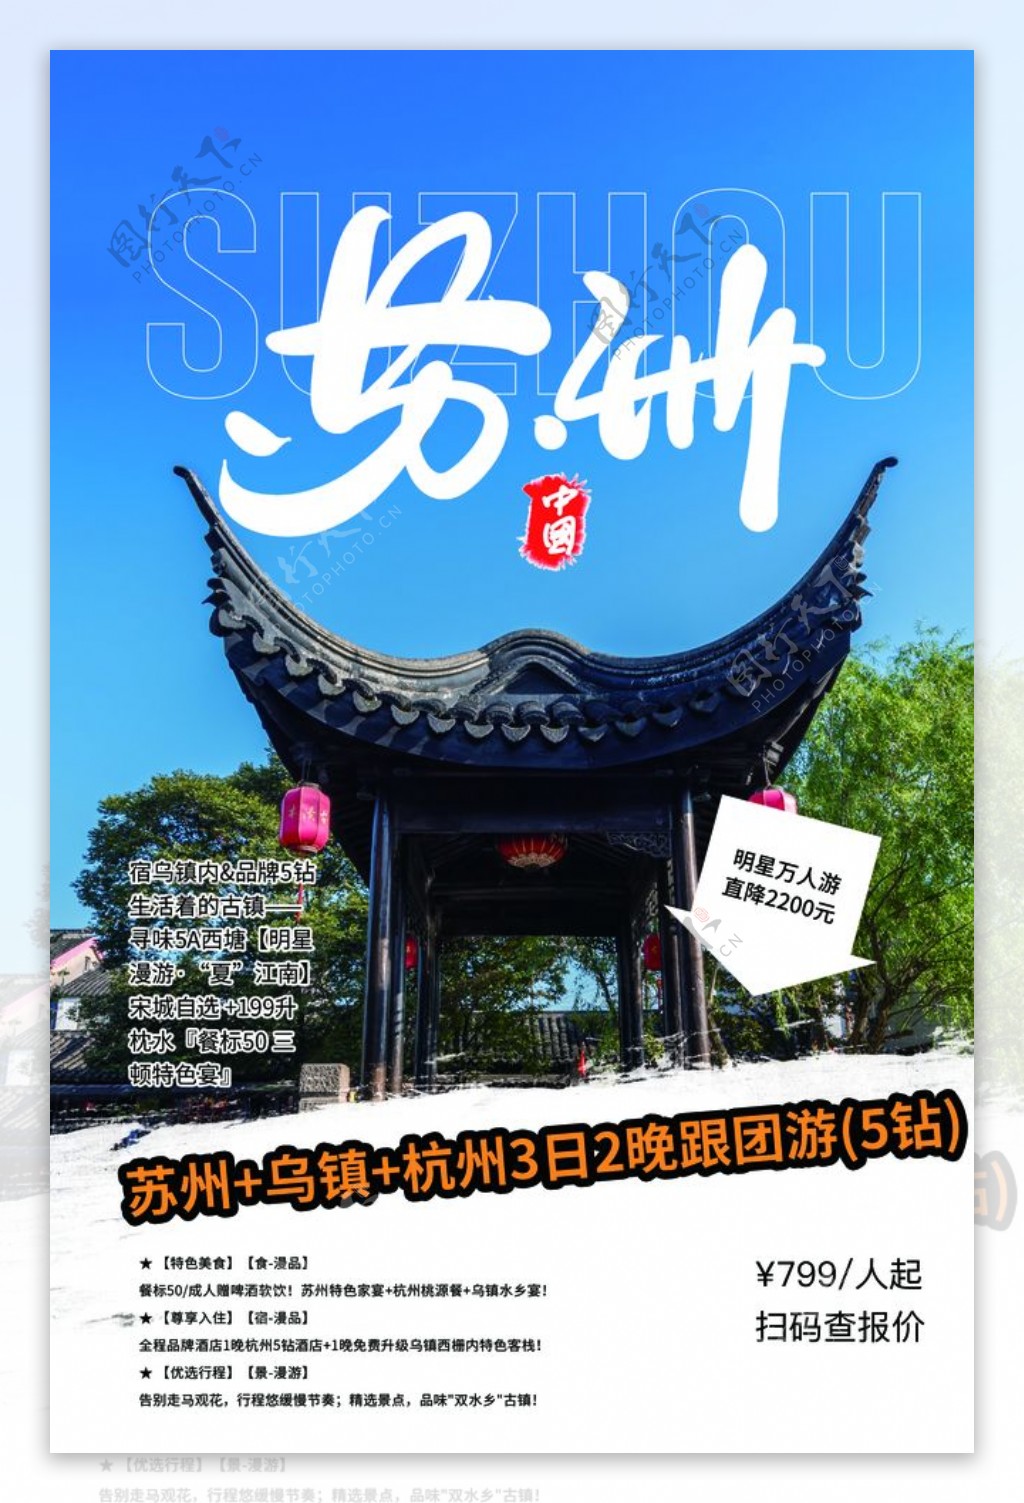 苏州旅游景点景区活动宣传海报